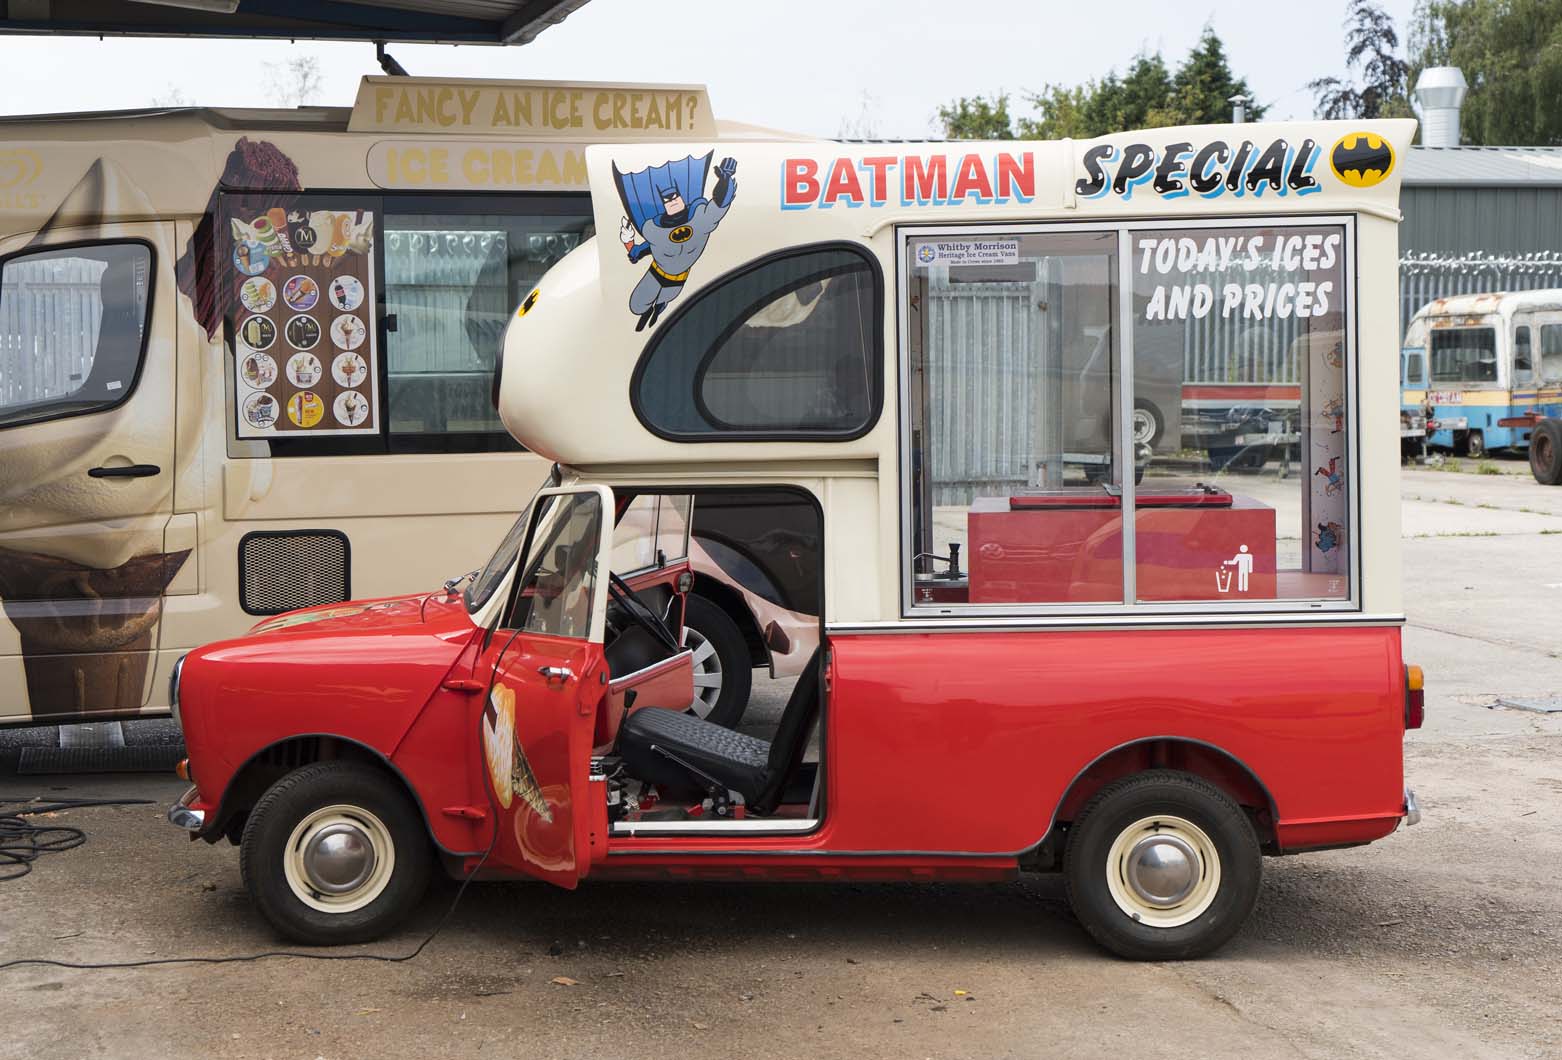 scenes at Britain's ice-cream van HQ 